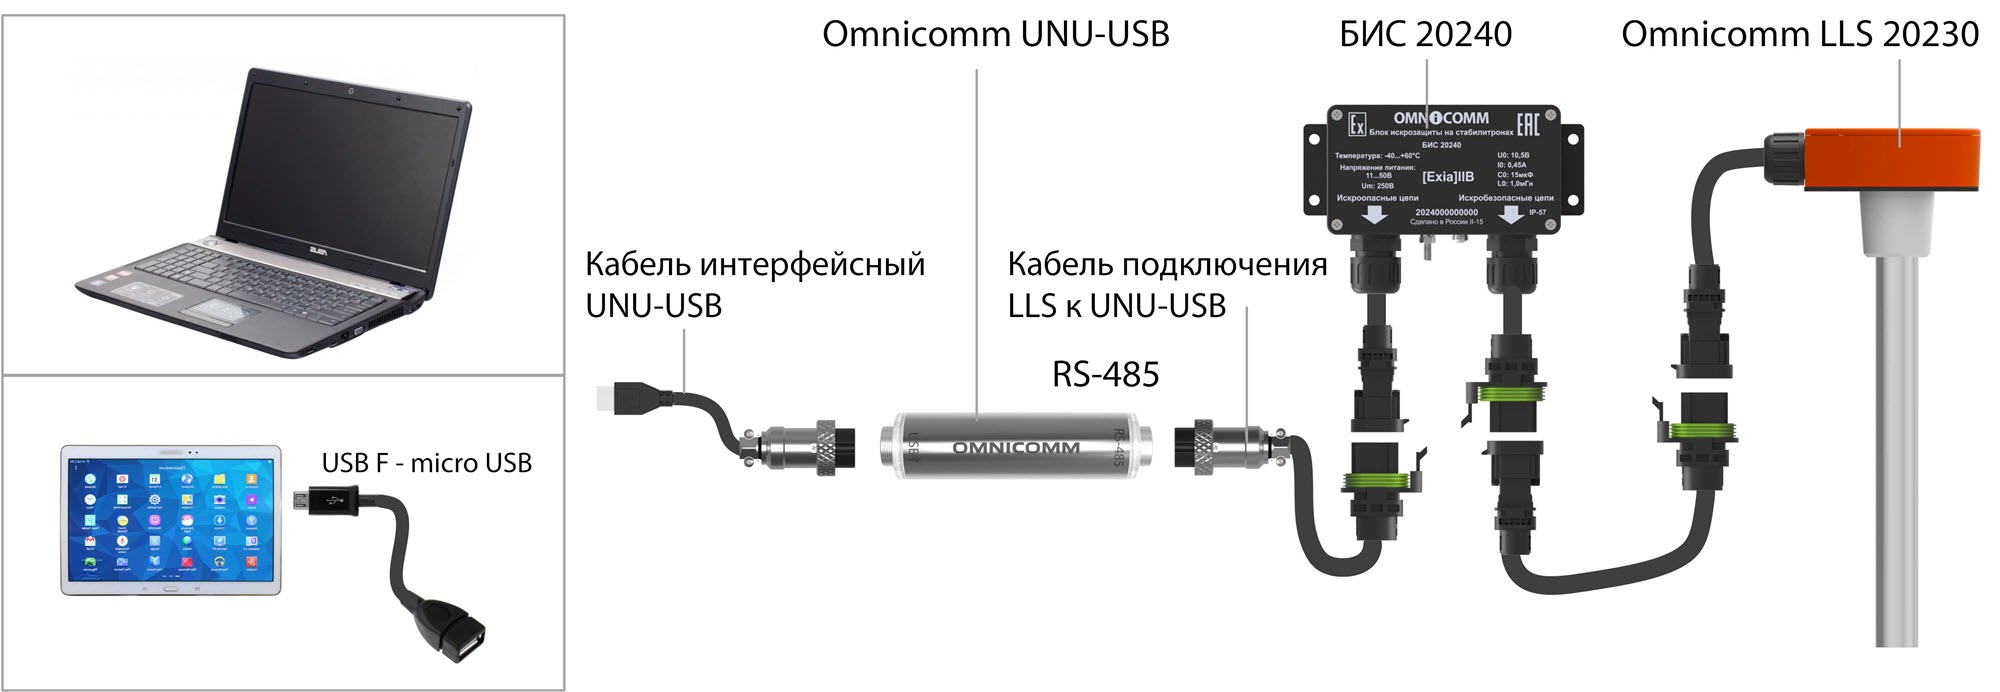 Подключение датчика Omnicomm LLS 20230 к ПК с помощью USB-USB 